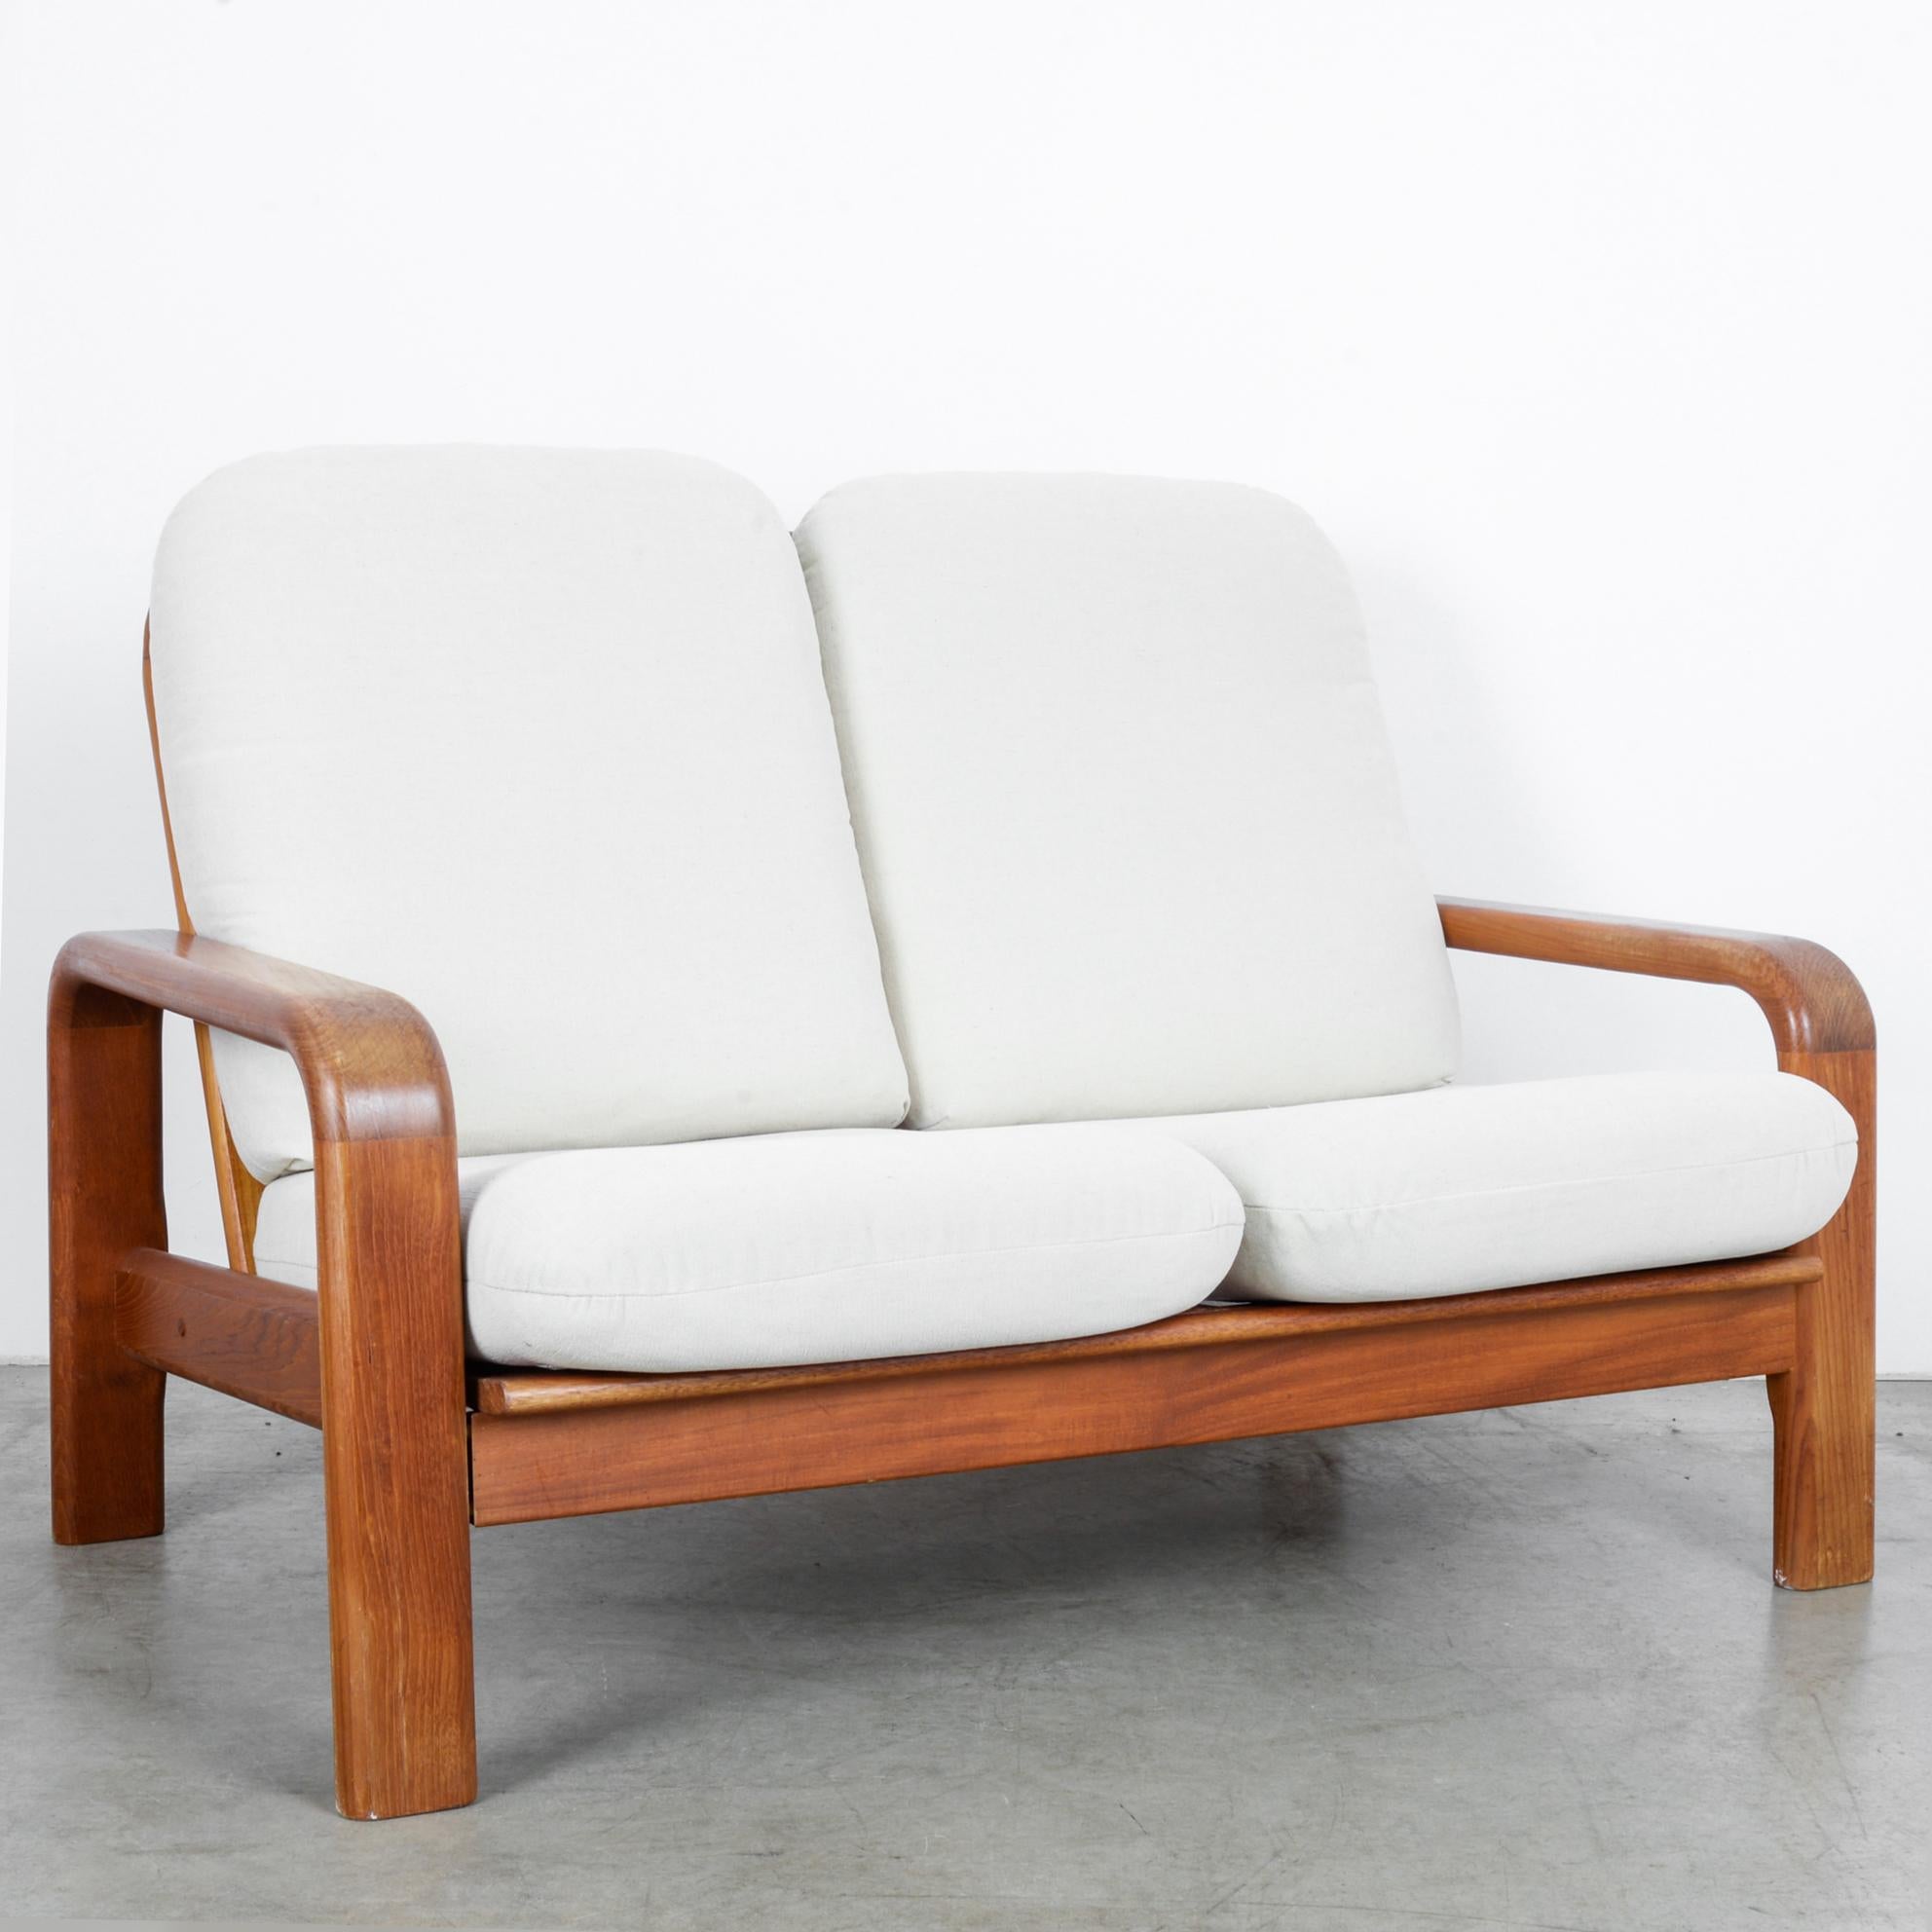 Ce canapé à deux places a été fabriqué au Danemark, vers 1960. Les sièges et dossiers rembourrés en blanc ivoire apportent du confort et mettent en valeur les tons chauds du bois poli. Les accoudoirs et les dossiers présentent des bords arrondis,